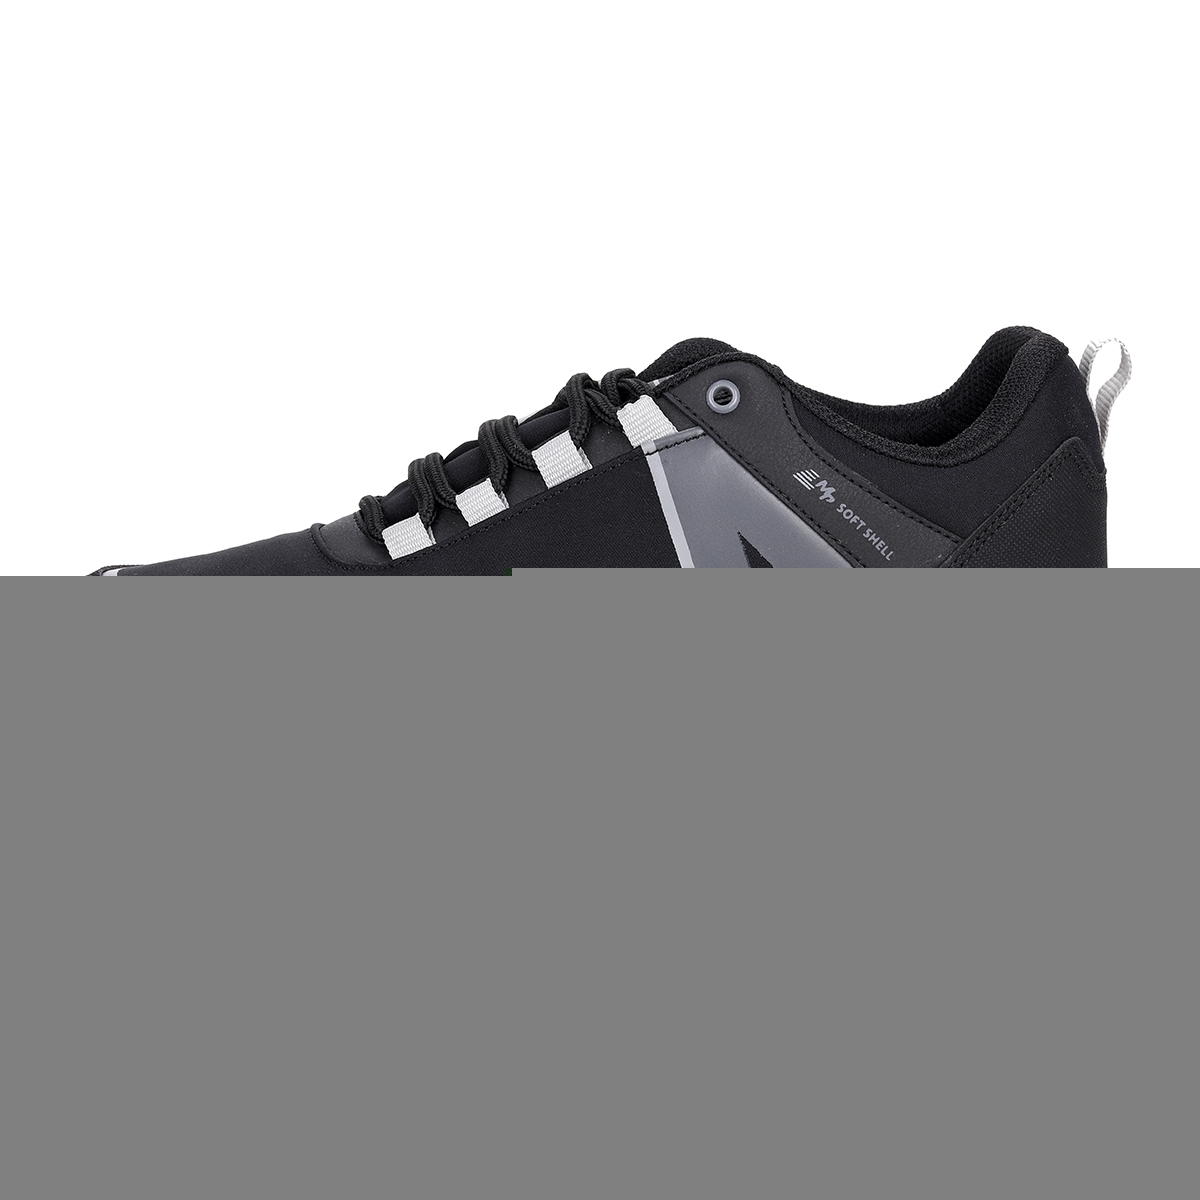 Flo 212-2183MR Günlük Bağcıklı Erkek Spor Ayakkabı Siyah - Gri. 3